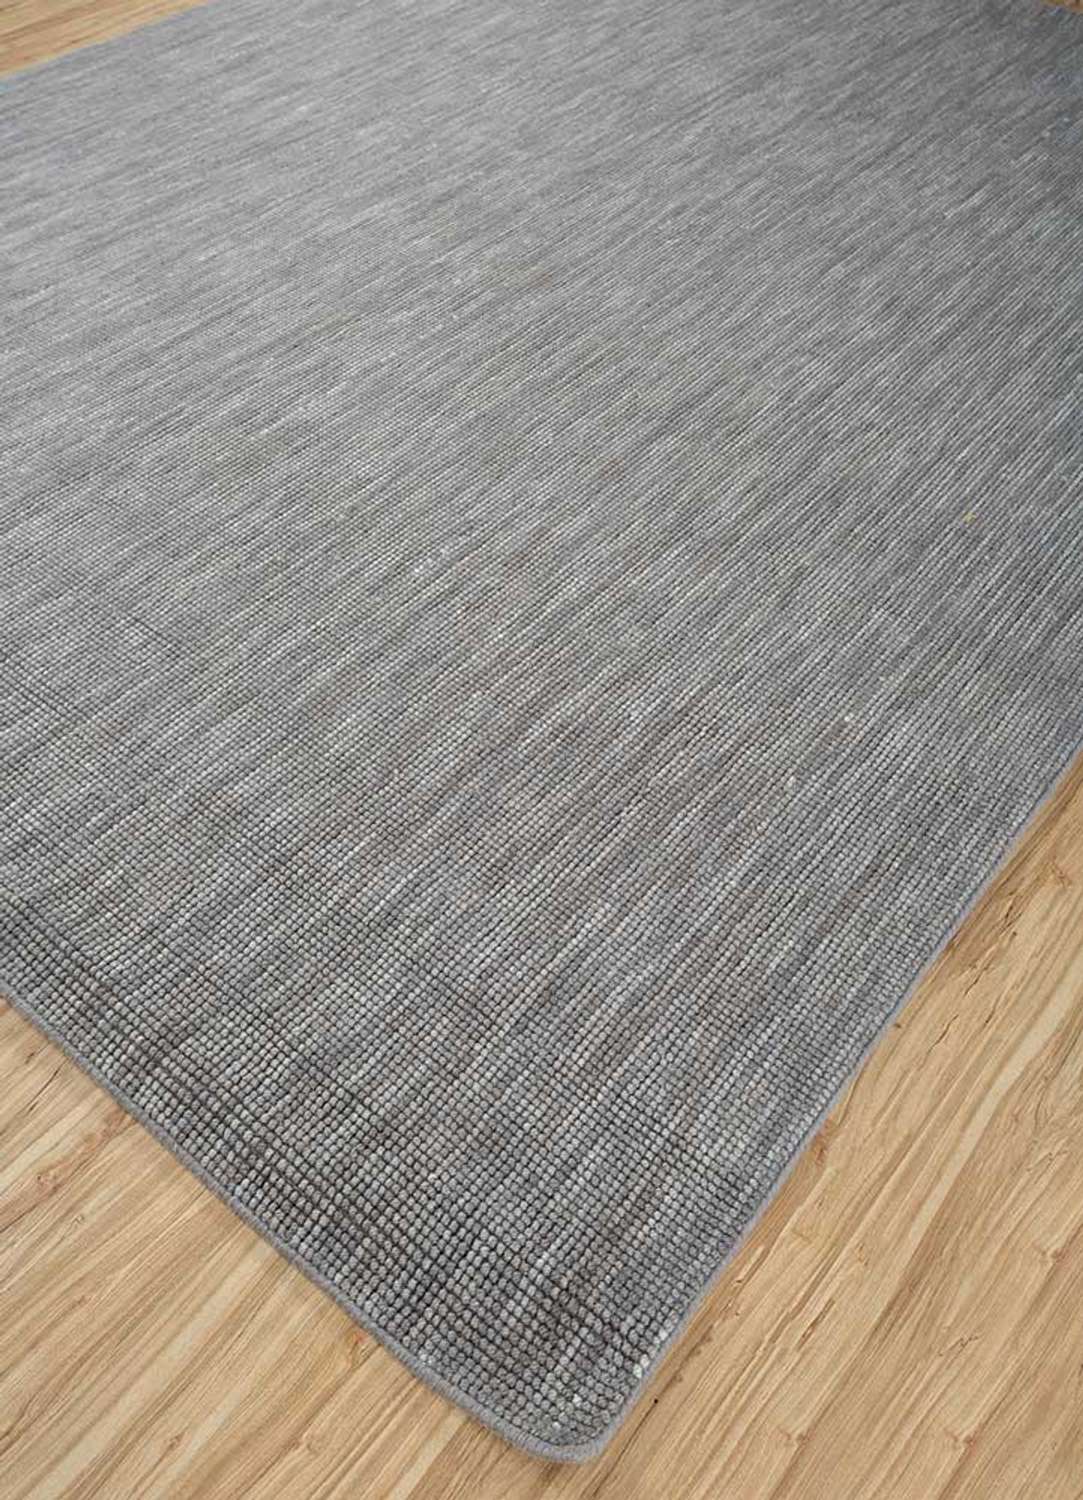 Designový koberec - Concepcion - obdélníkový